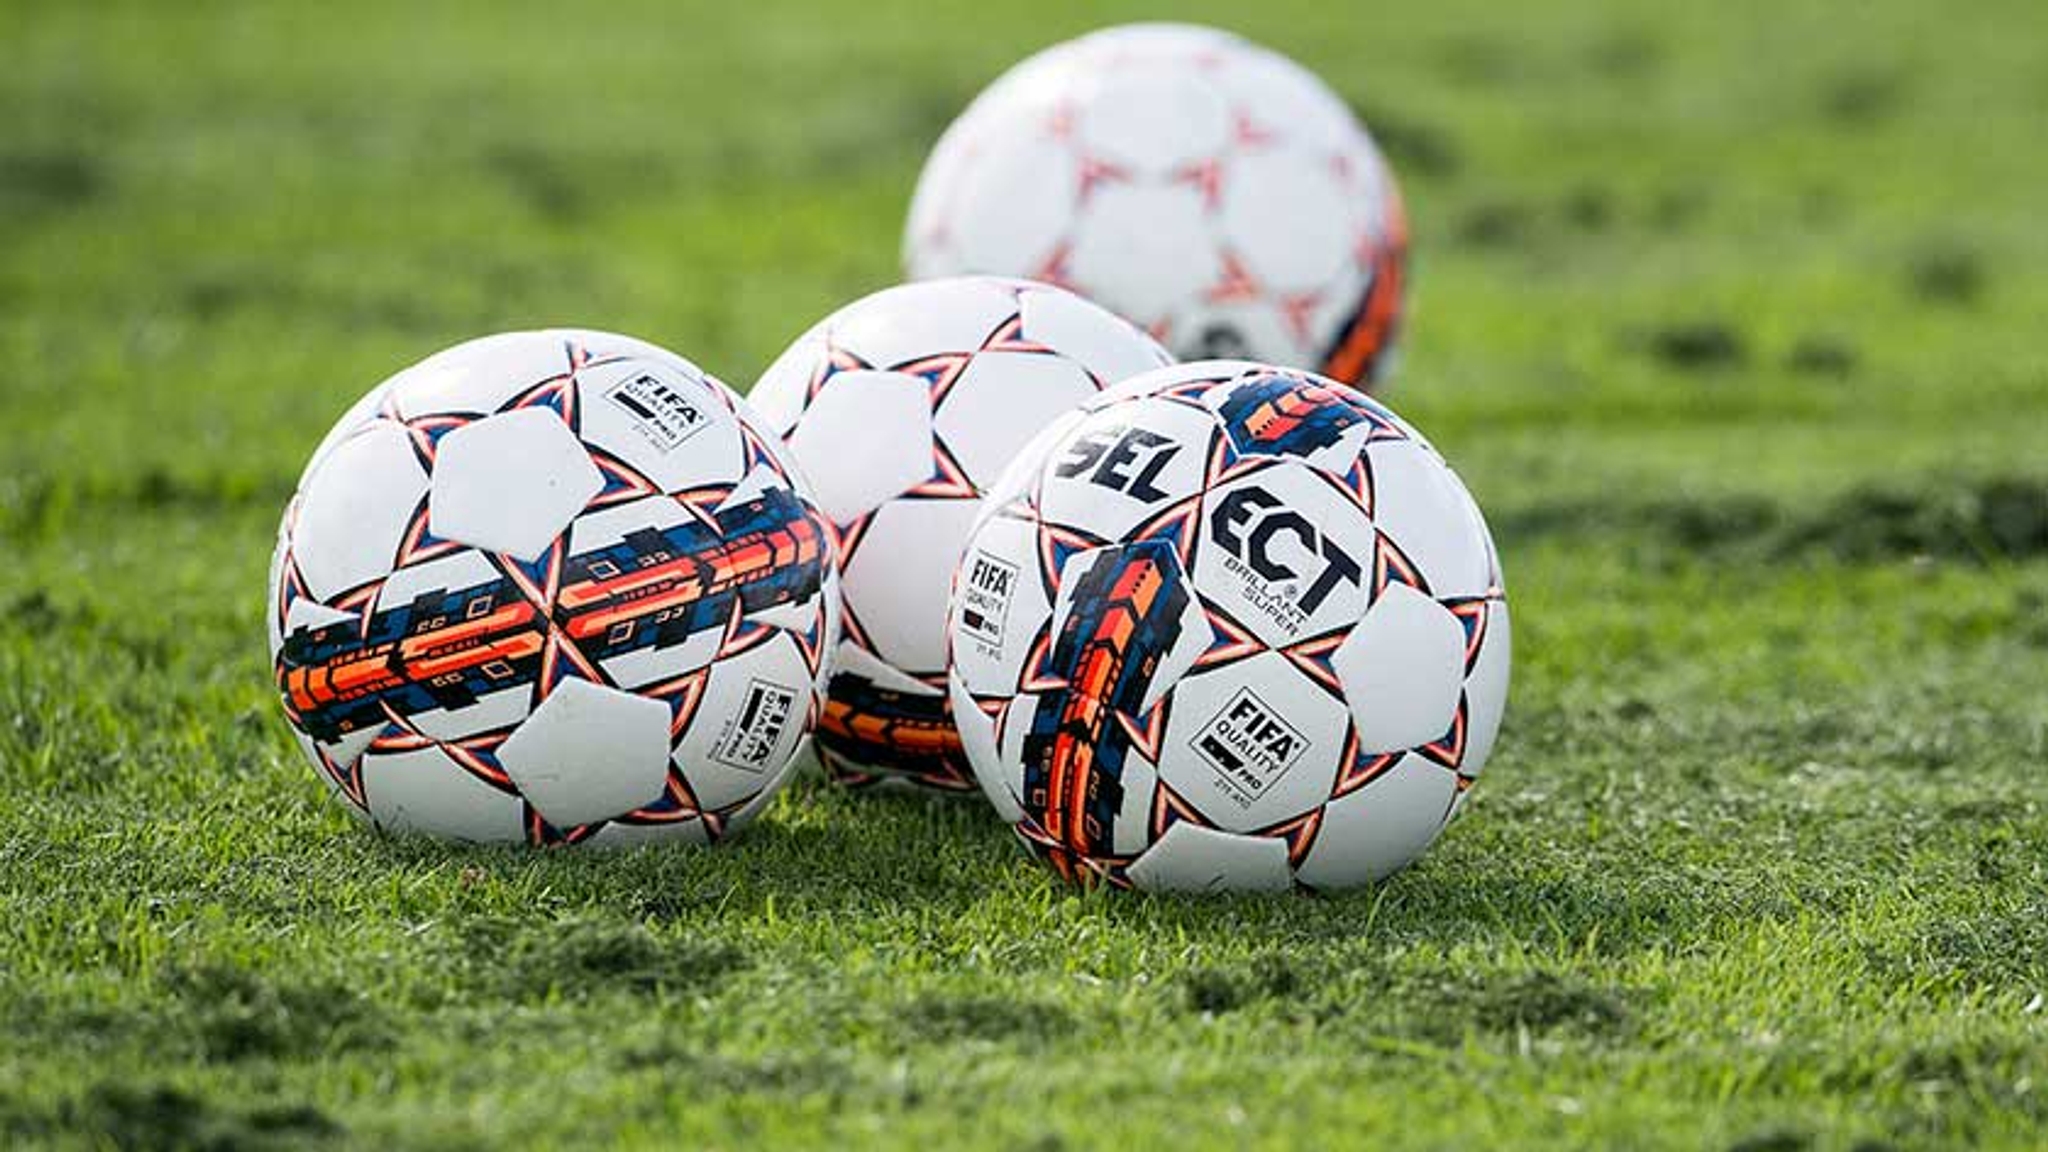 Fodboldspillere i Skandinavien enige: Vi vil spille på græs